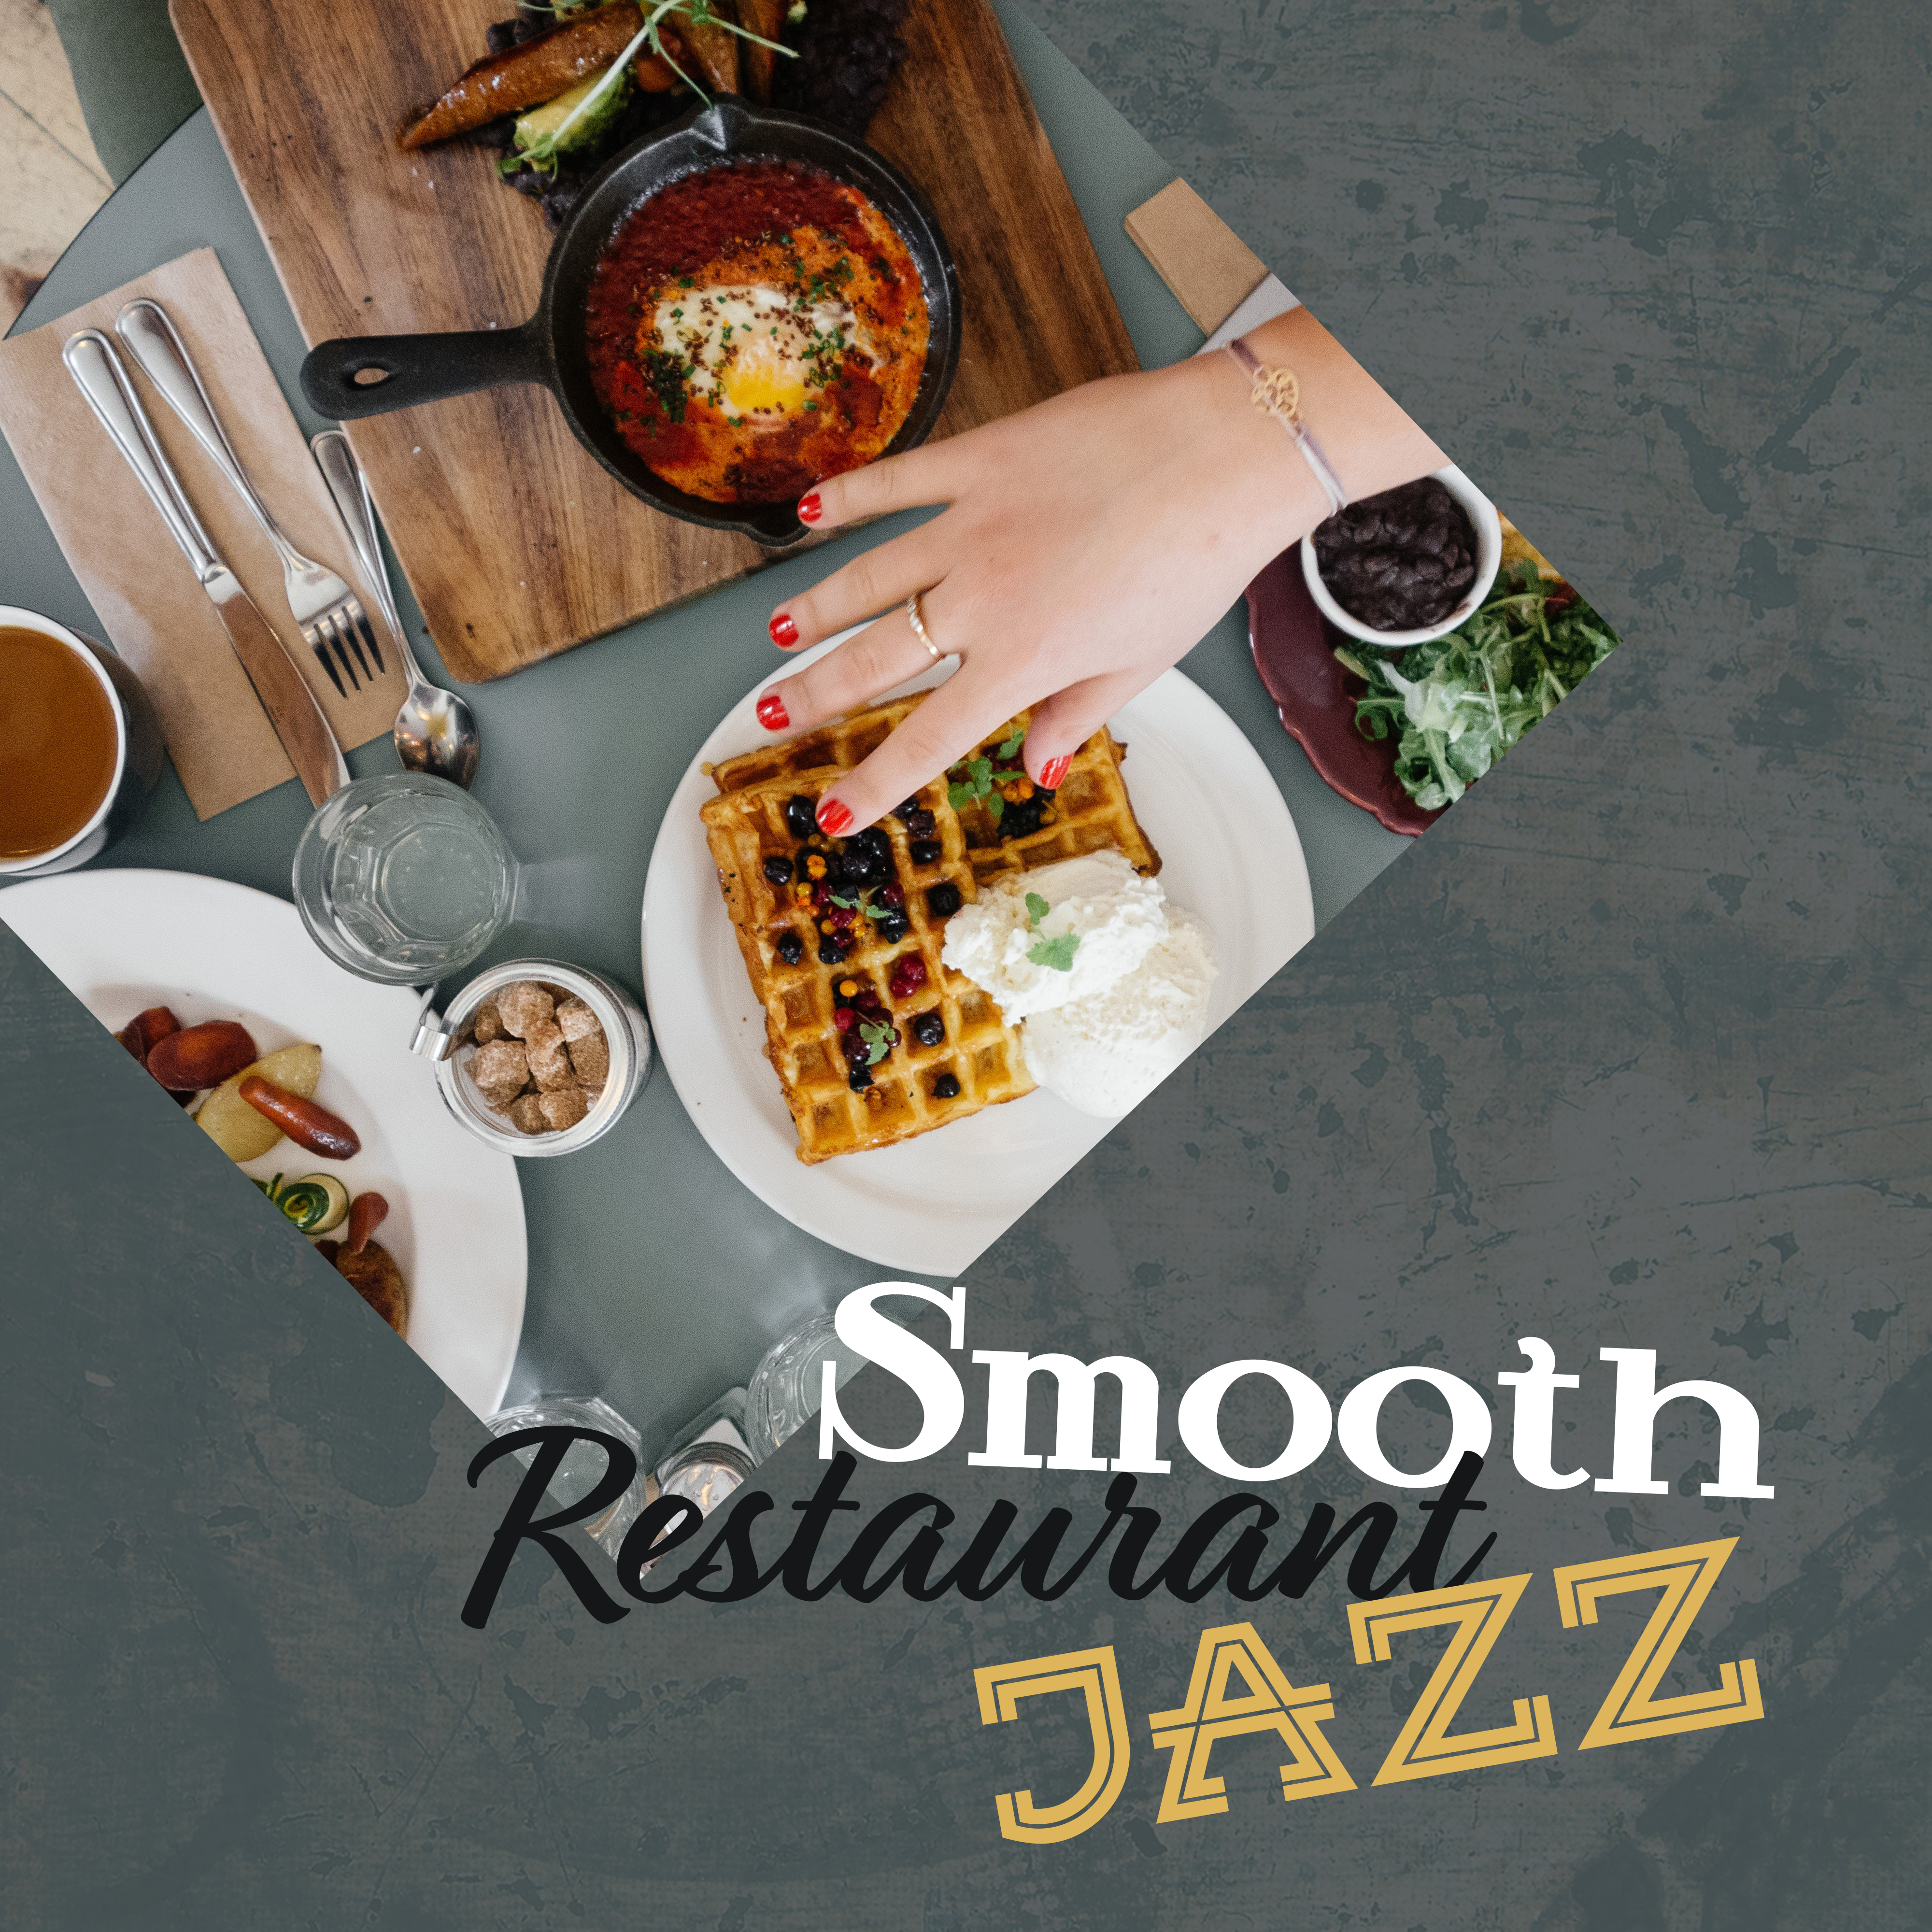 Smooth Restaurant Jazz